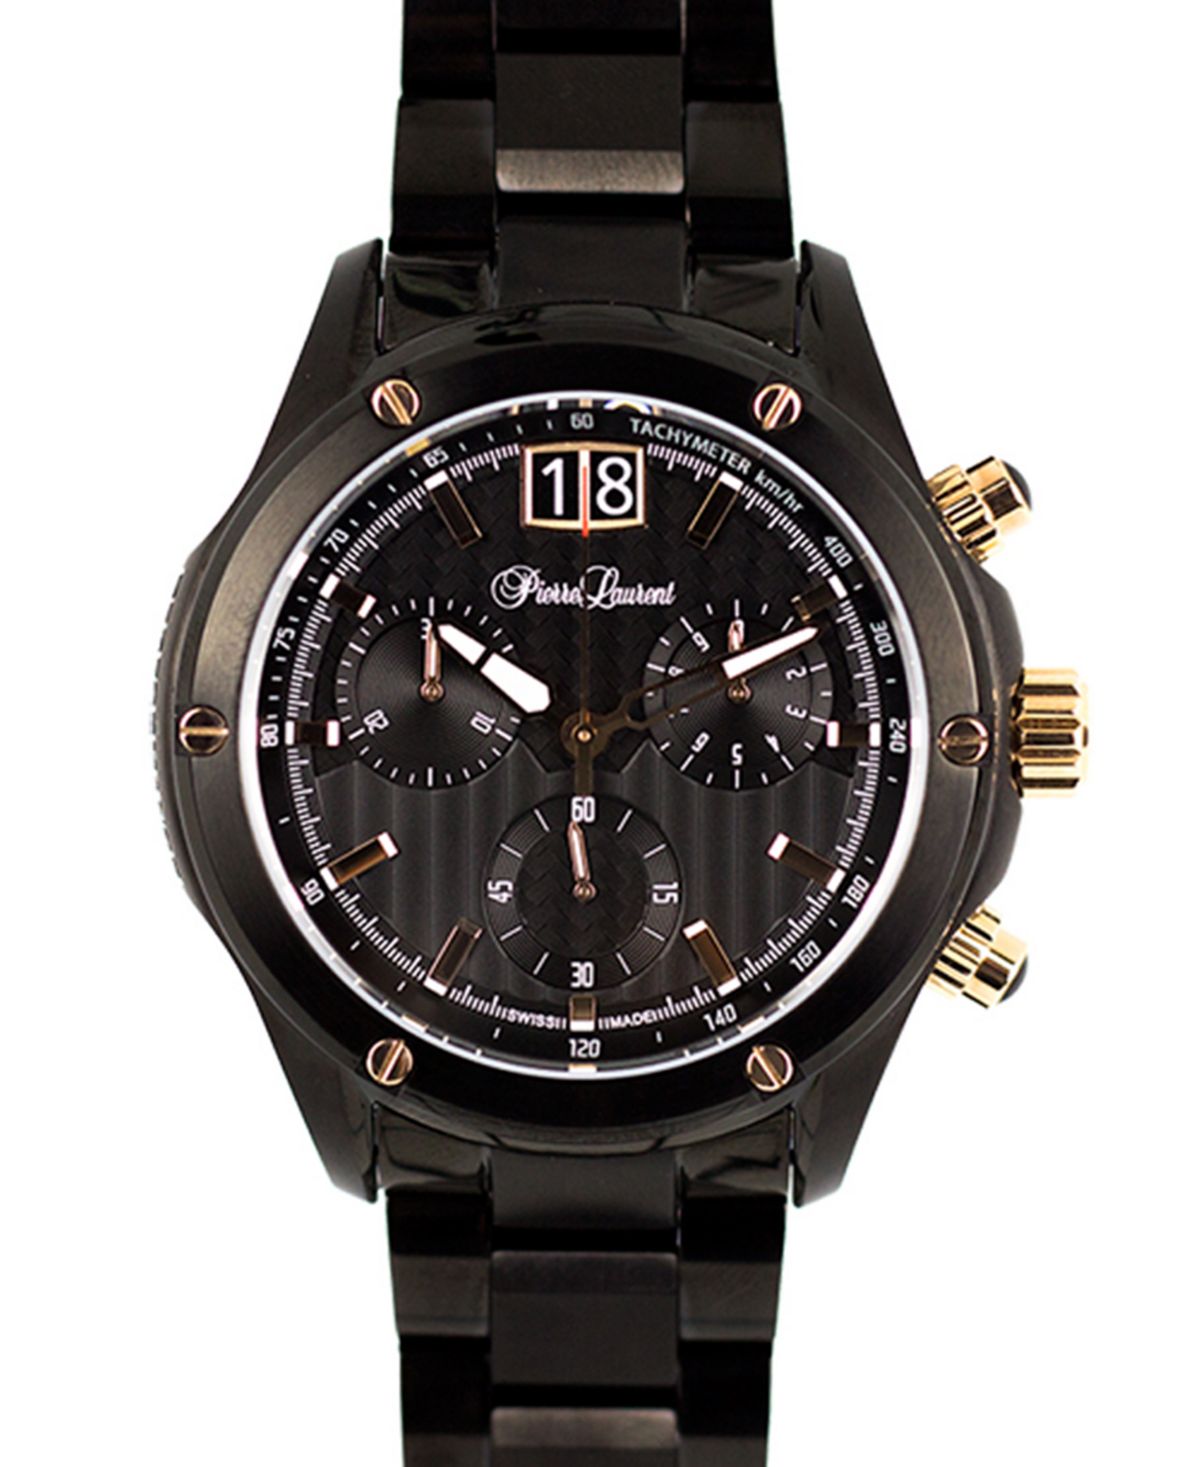 Мужские функциональные швейцарские часы с хронографом и браслетом из нержавеющей стали, 45 мм Pierre Laurent 16 дюймовая пицца с кожурой ooni цвет stainless steel black